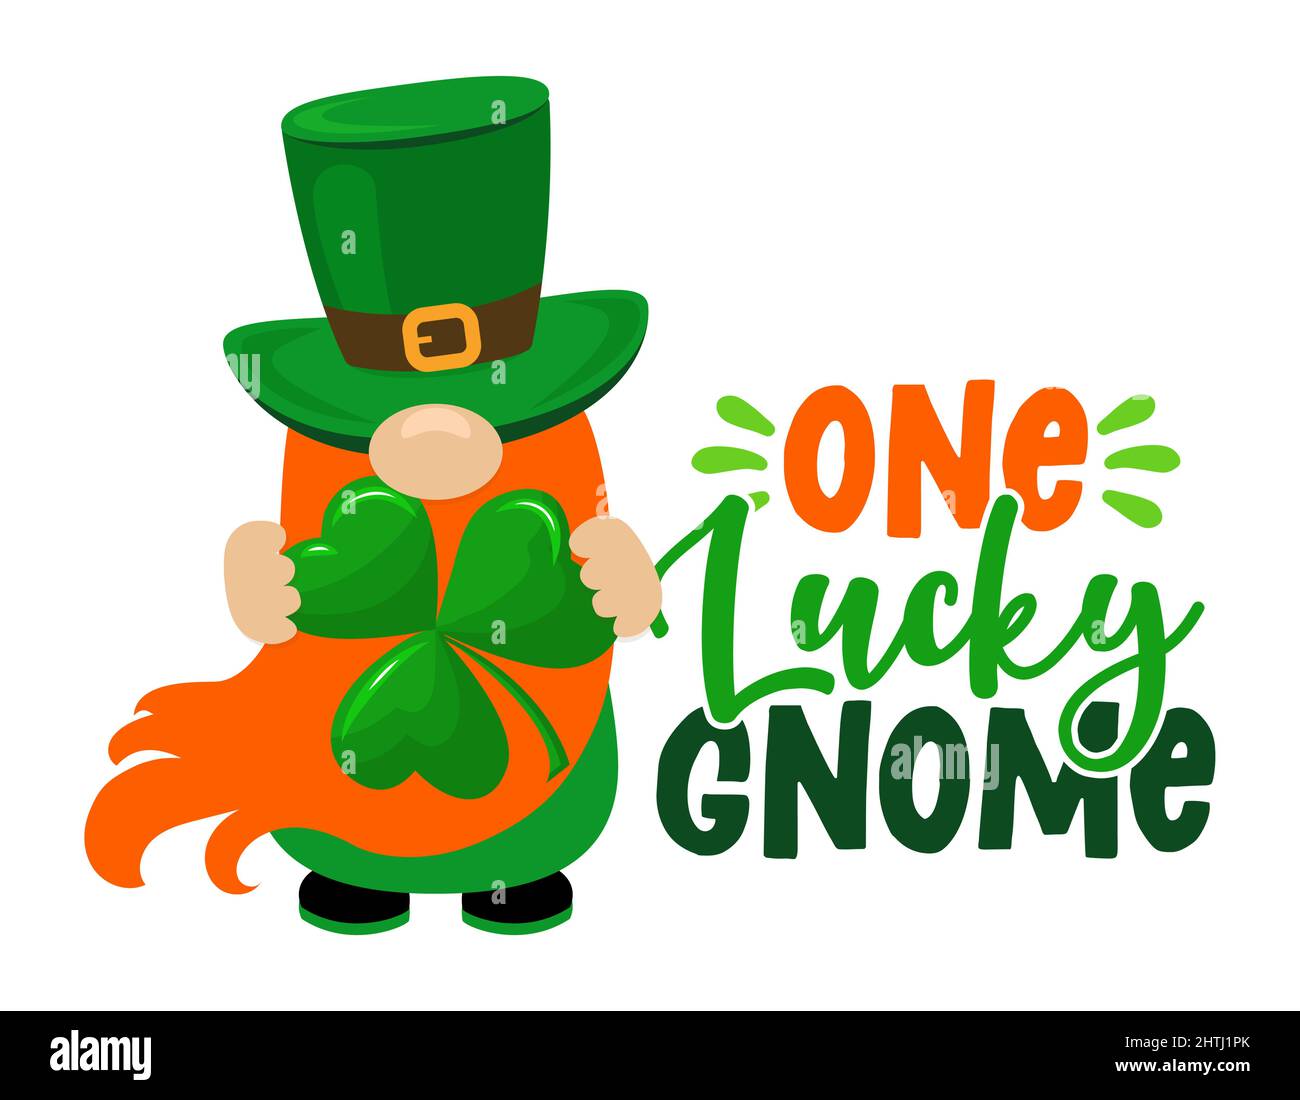 One Lucky Gnome - lustiges St. Patrick's Day inspirierendes Schriftzug Design für Poster, T-Shirt, Karte, Einladung, Aufkleber, Banner, Geschenk. Irischer Kobold Stock Vektor